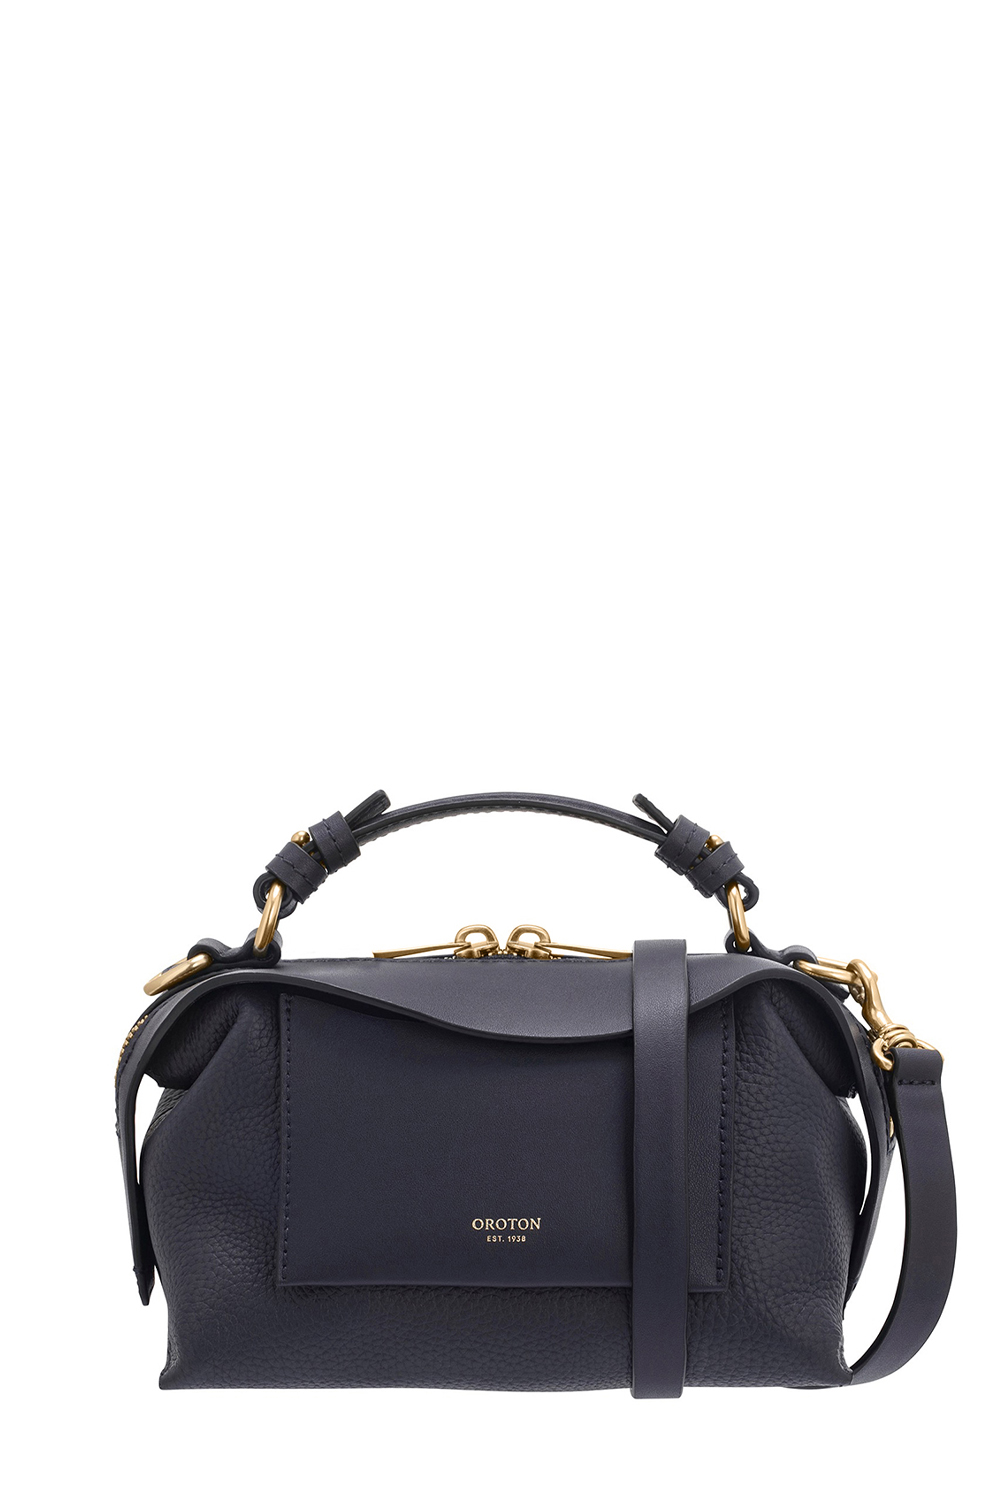 Wishlist: classic bags | Work handbag, Classic bags, Fashion bags